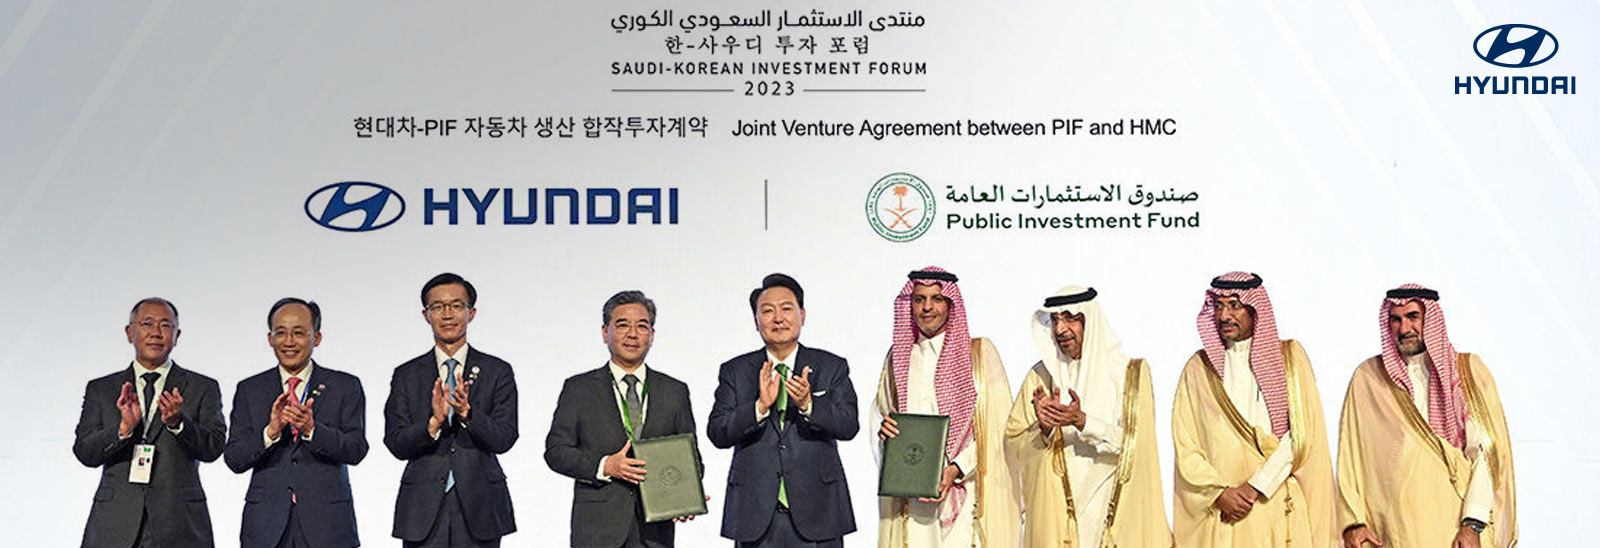 El Fondo de Inversión Pública (PIF) y Hyundai Motor Company firmarán acuerdo para fabricar vehículos en una planta completamente automatizada en Arabia Saudita.